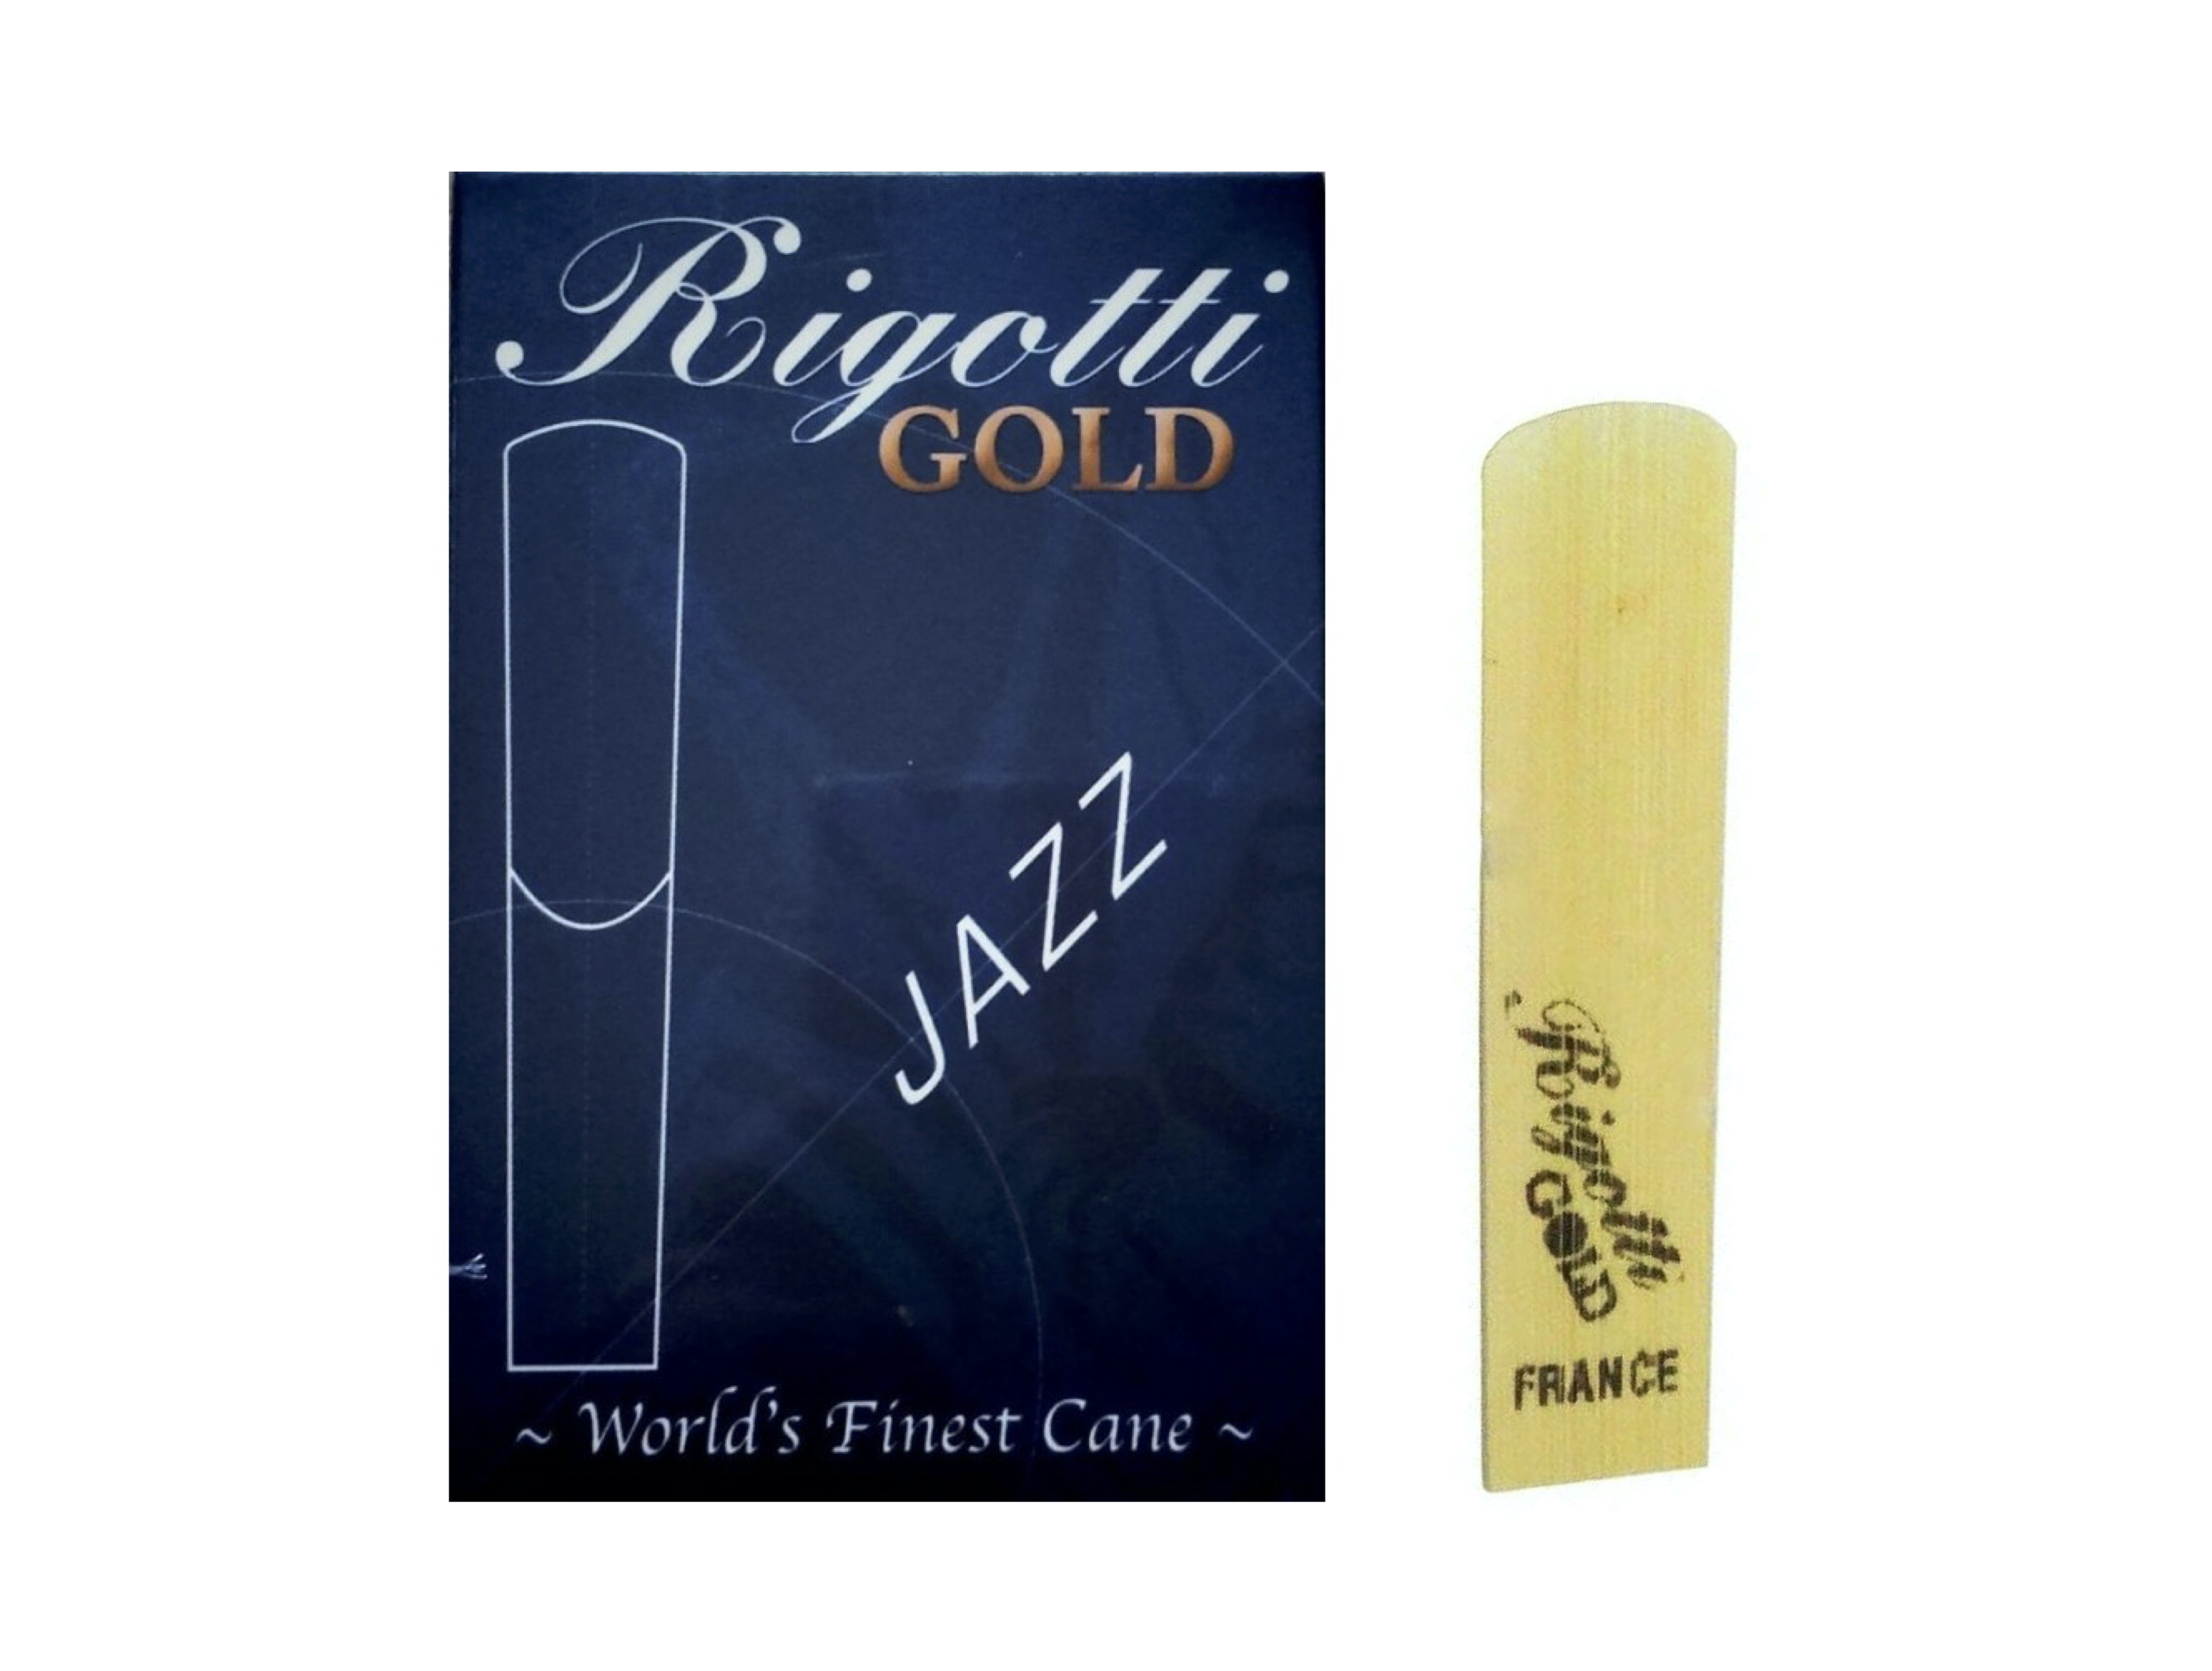 Rigotti Gold Jazz sopraansax riet per stuk